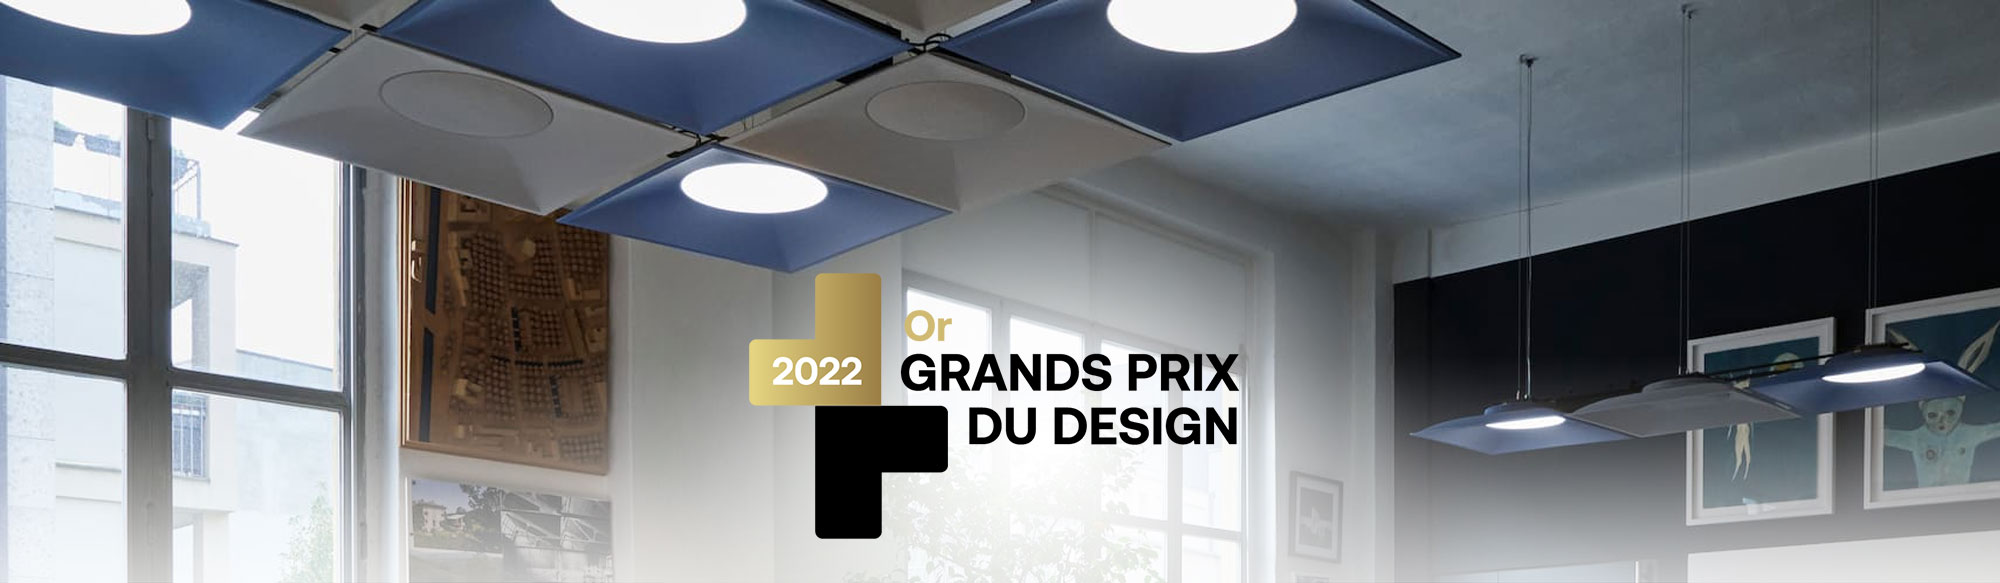 Les Grands Prix du Design: Light Shed receives Gold certificate